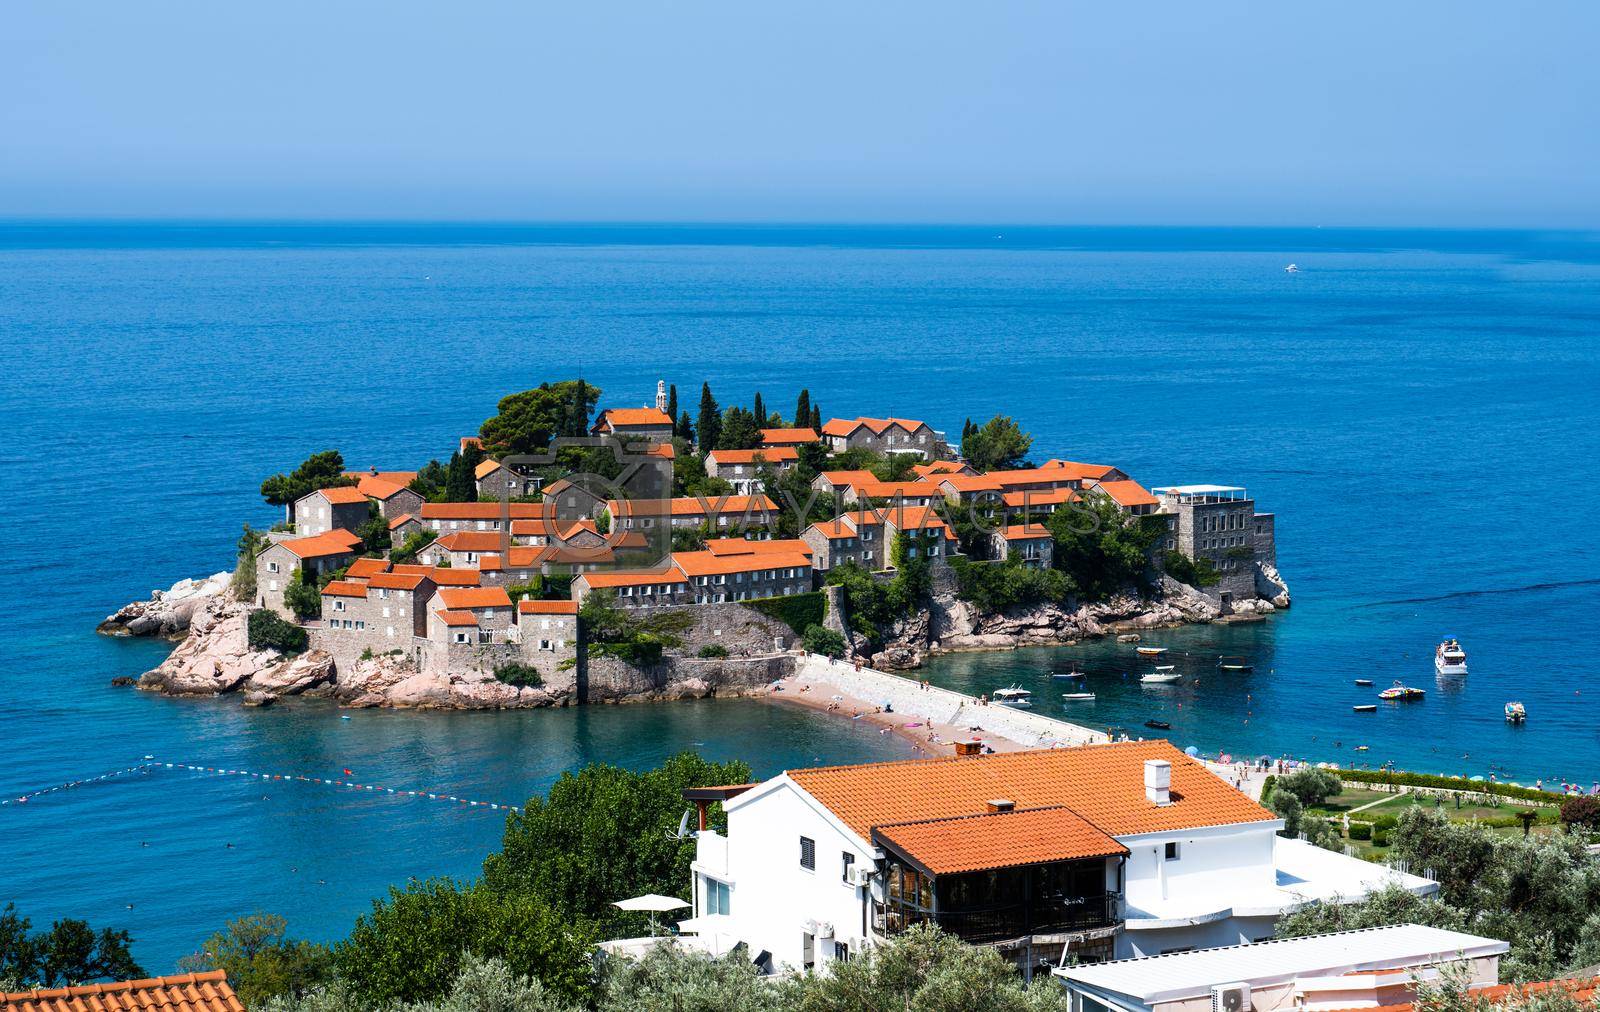 Royalty free image of Sveti Stefan island in Montenegro by GekaSkr